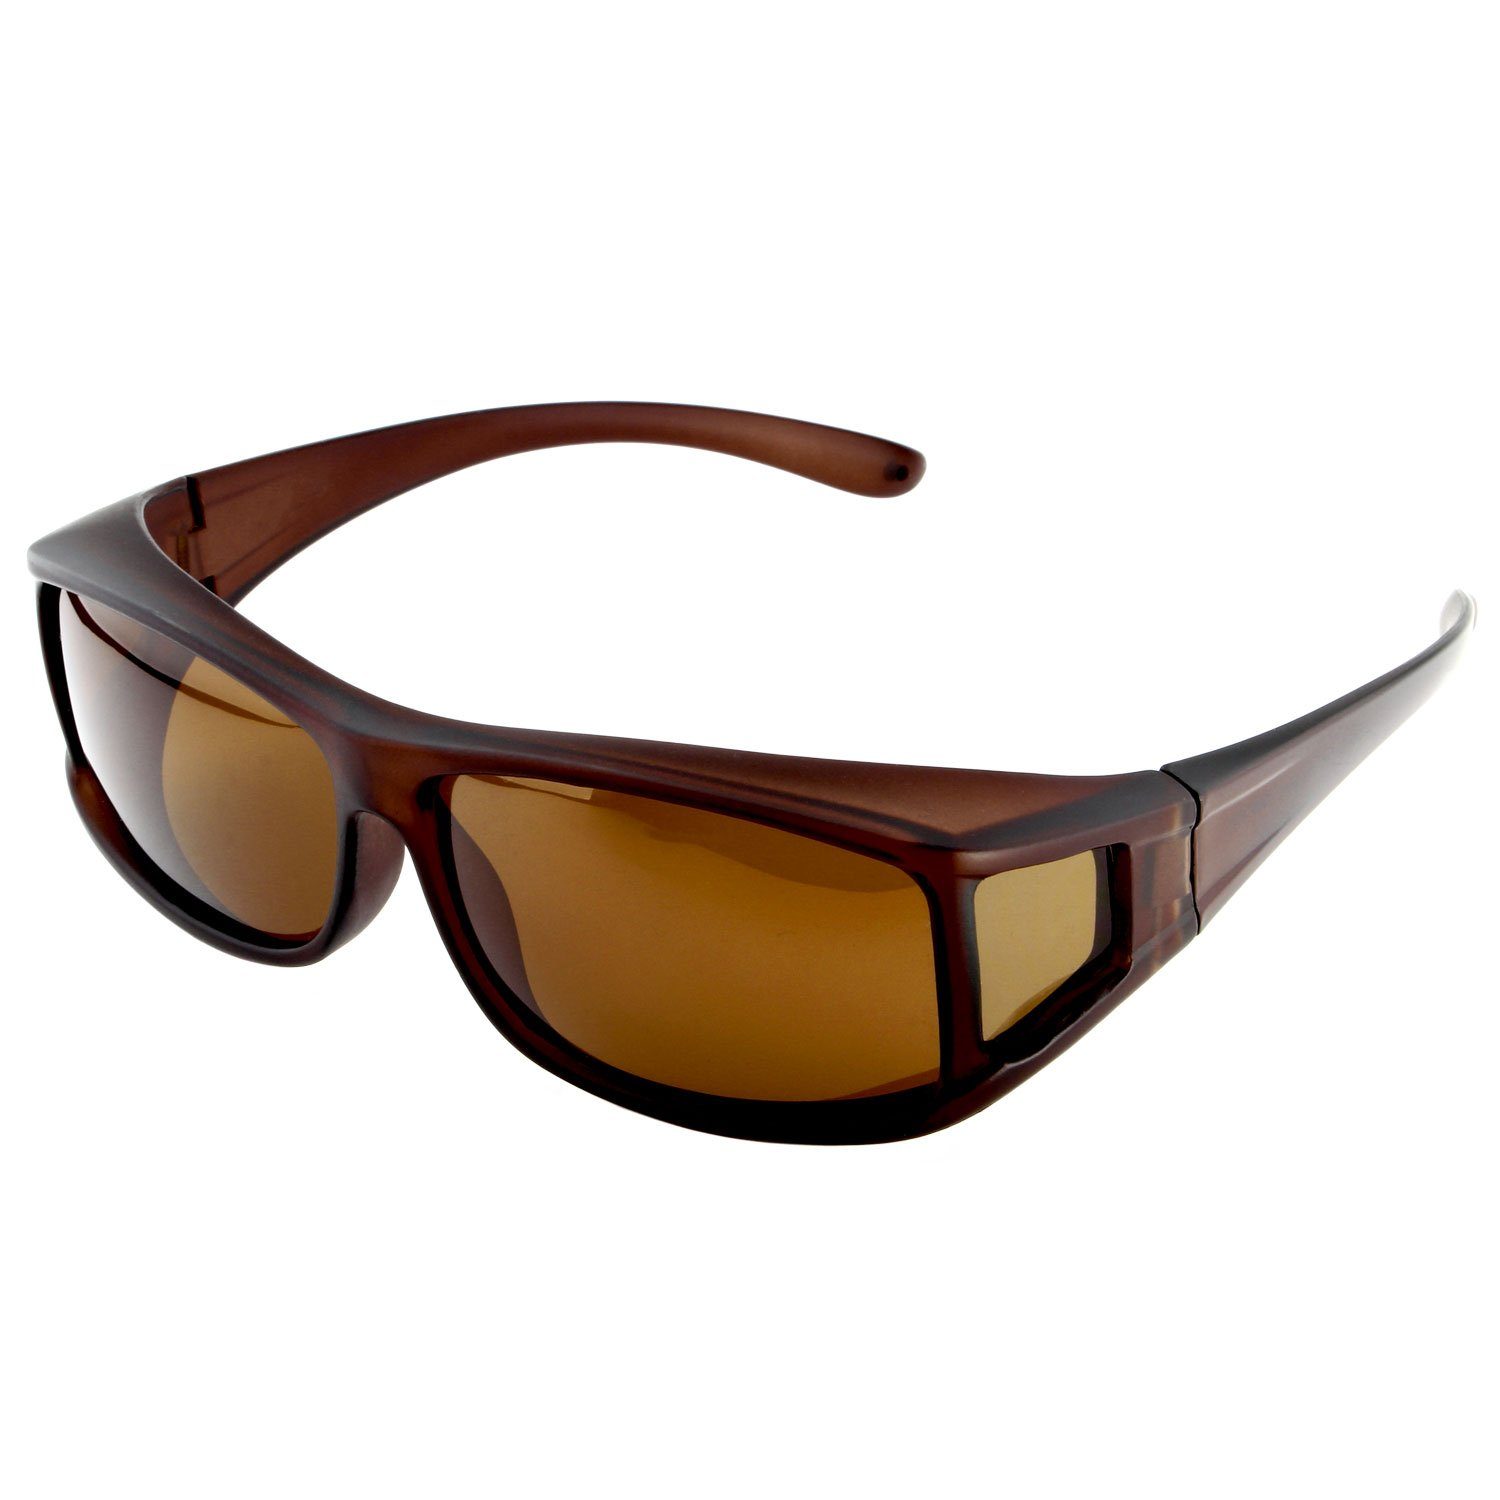 ActiveSol SUNGLASSES Sonnenbrille Überziehsonnenbrille Classic für Herren polarisierte, UV 400 Braun Matt